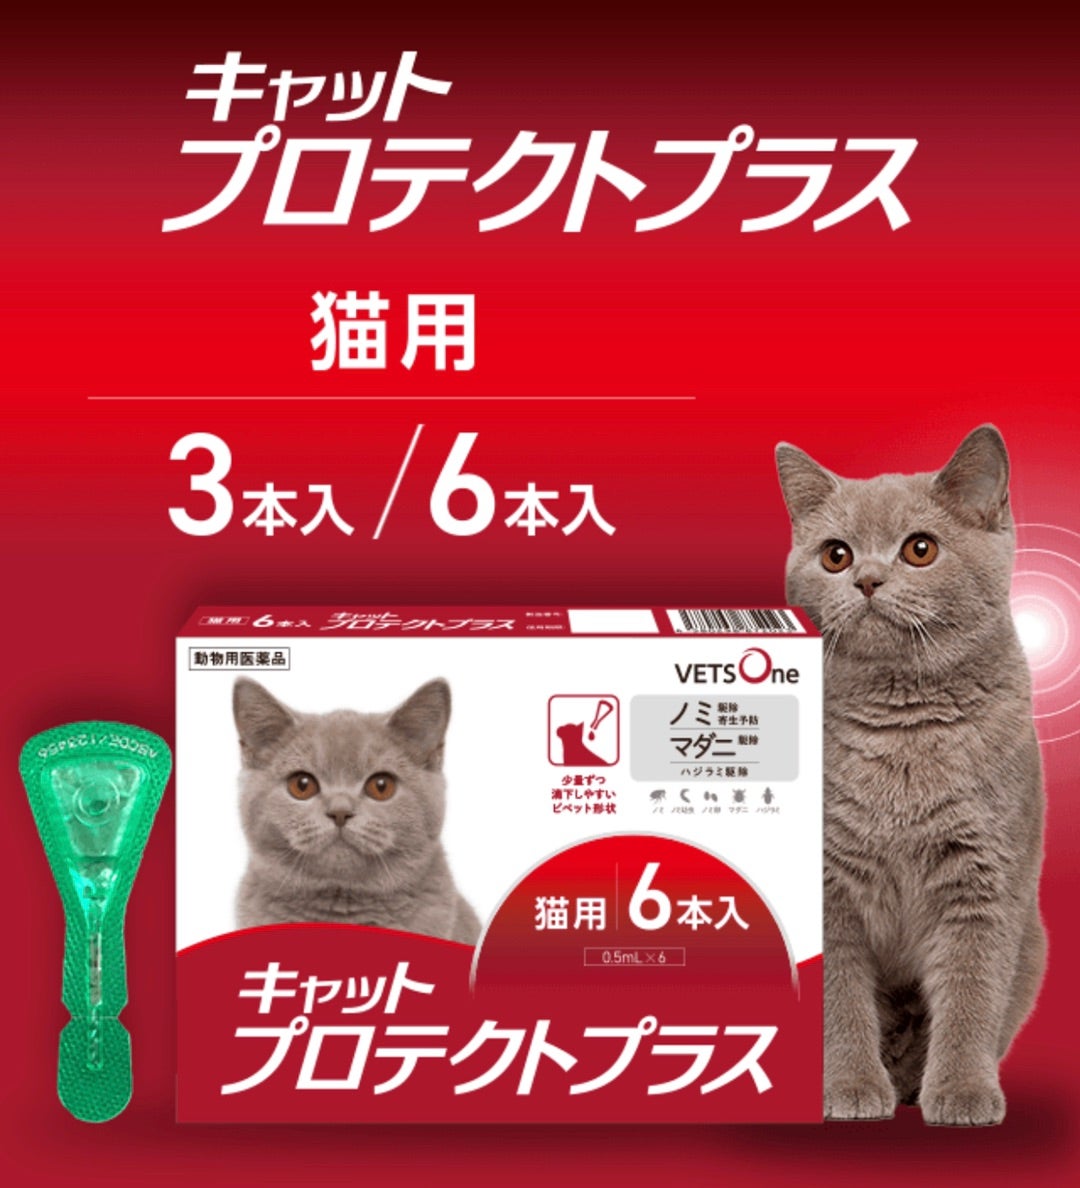 492円 激安通販 猫用フィプロスポットキャット 3本 3ピペット 動物用医薬品